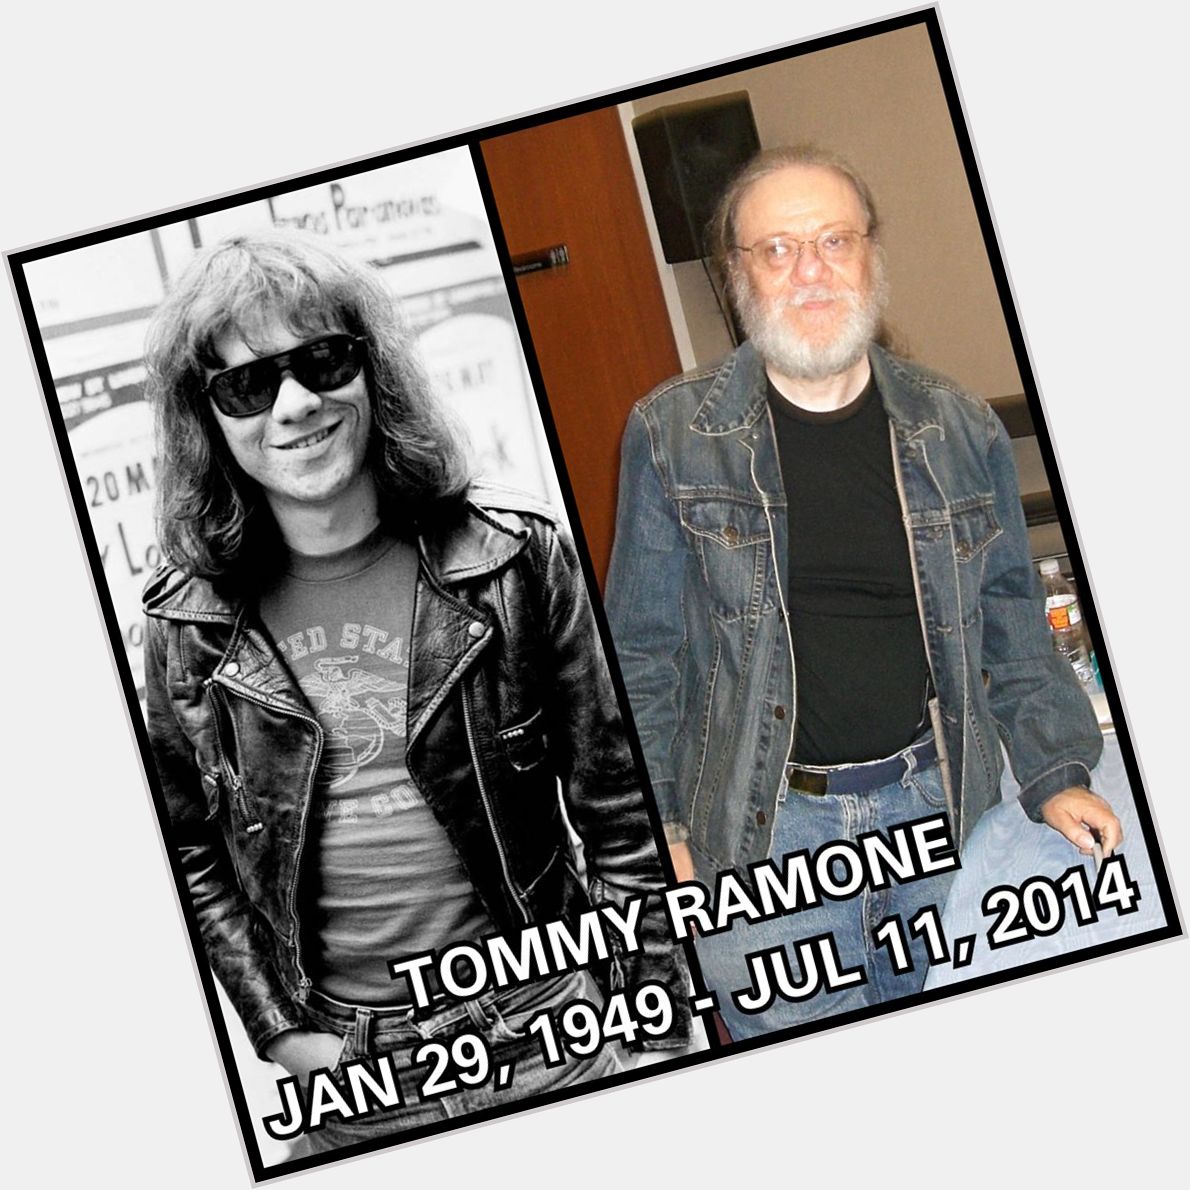 Happy Birthday Tommy Ramone
January 29, 1949 - July 11, 2014 